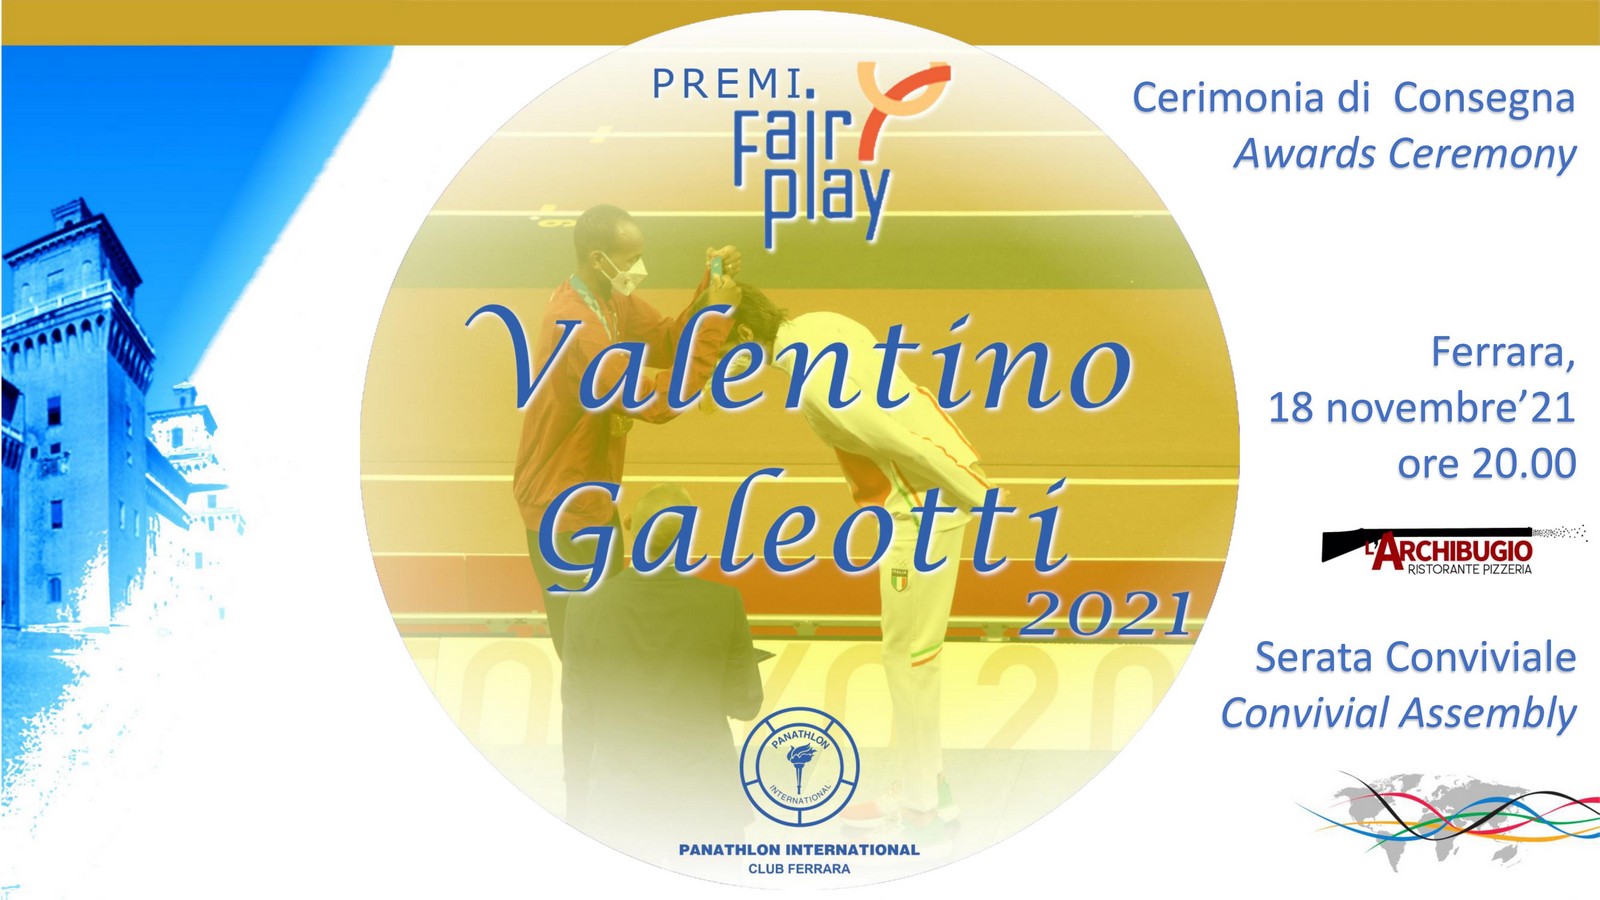 Cerimonia di Premiazione Premi Fair Play "Valentino Galeotti" 2021